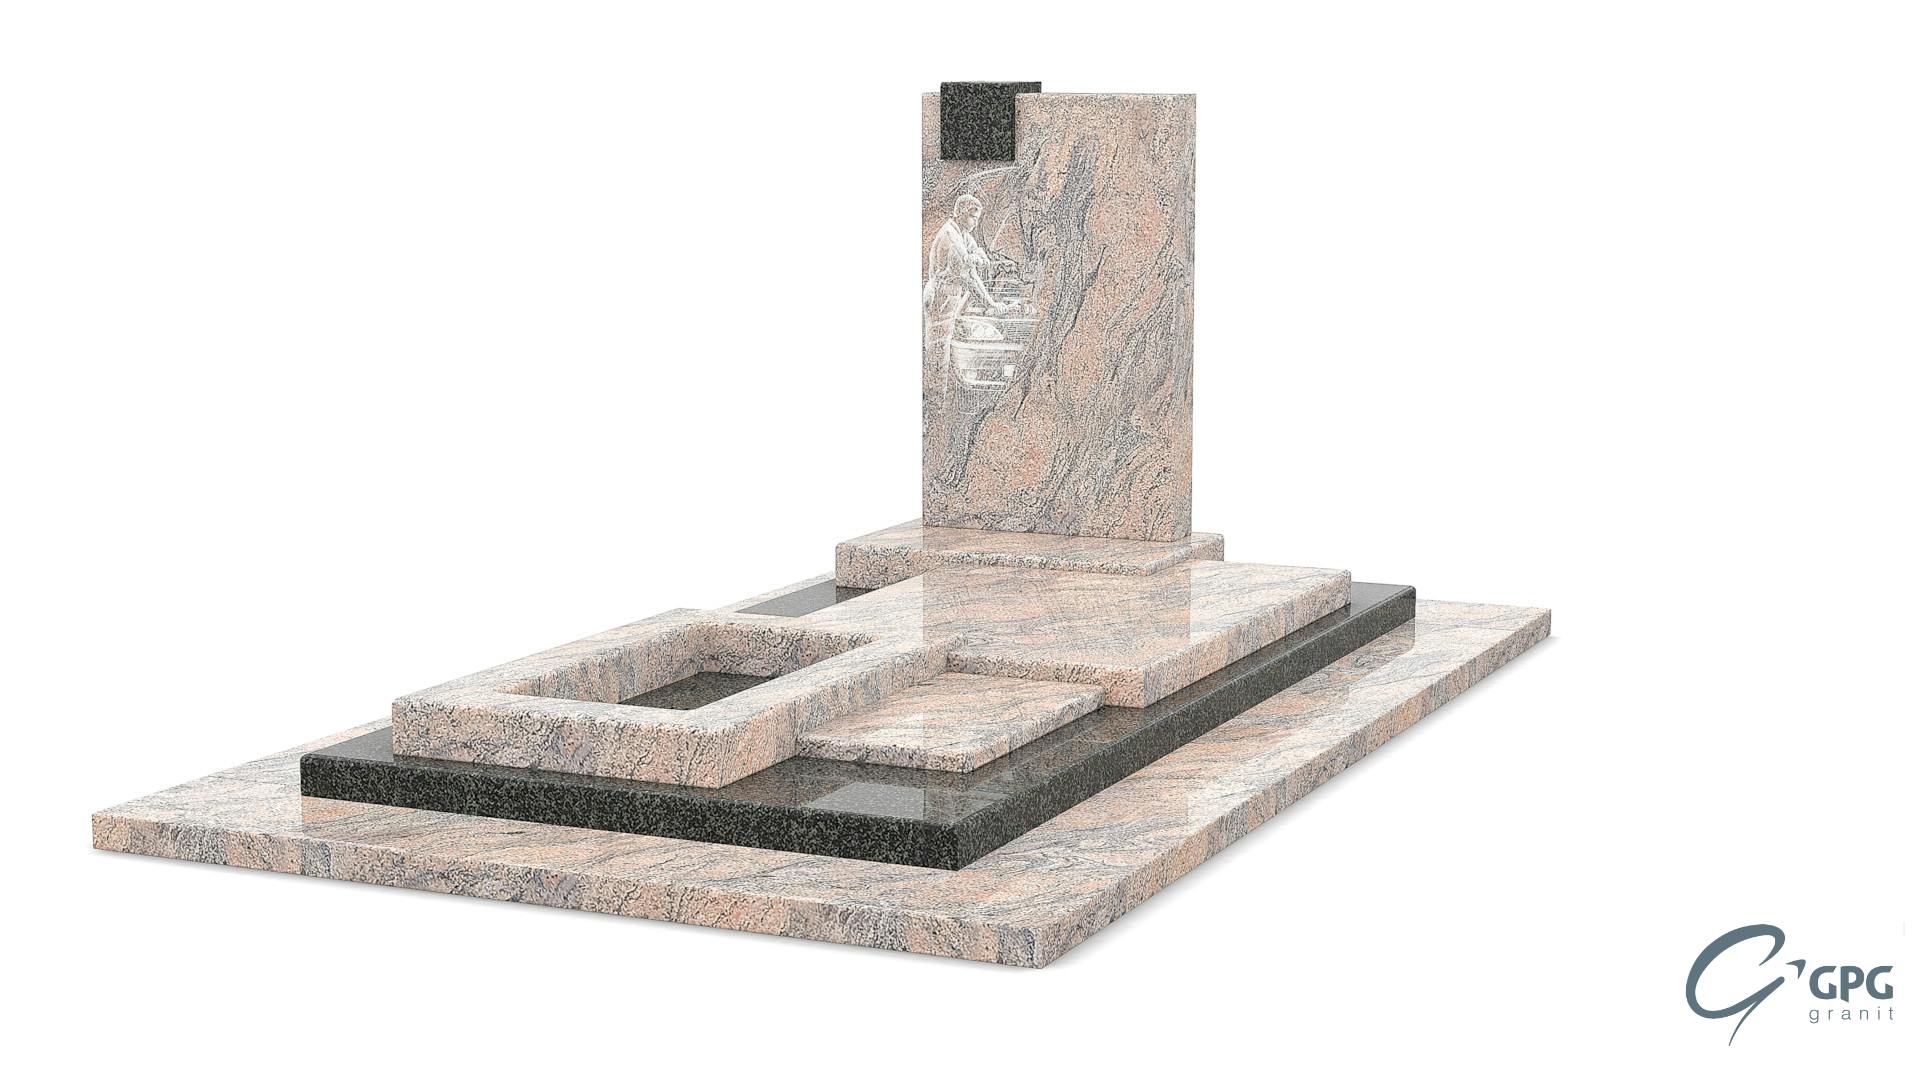 La conception d'un monument funéraire - GPG Granit